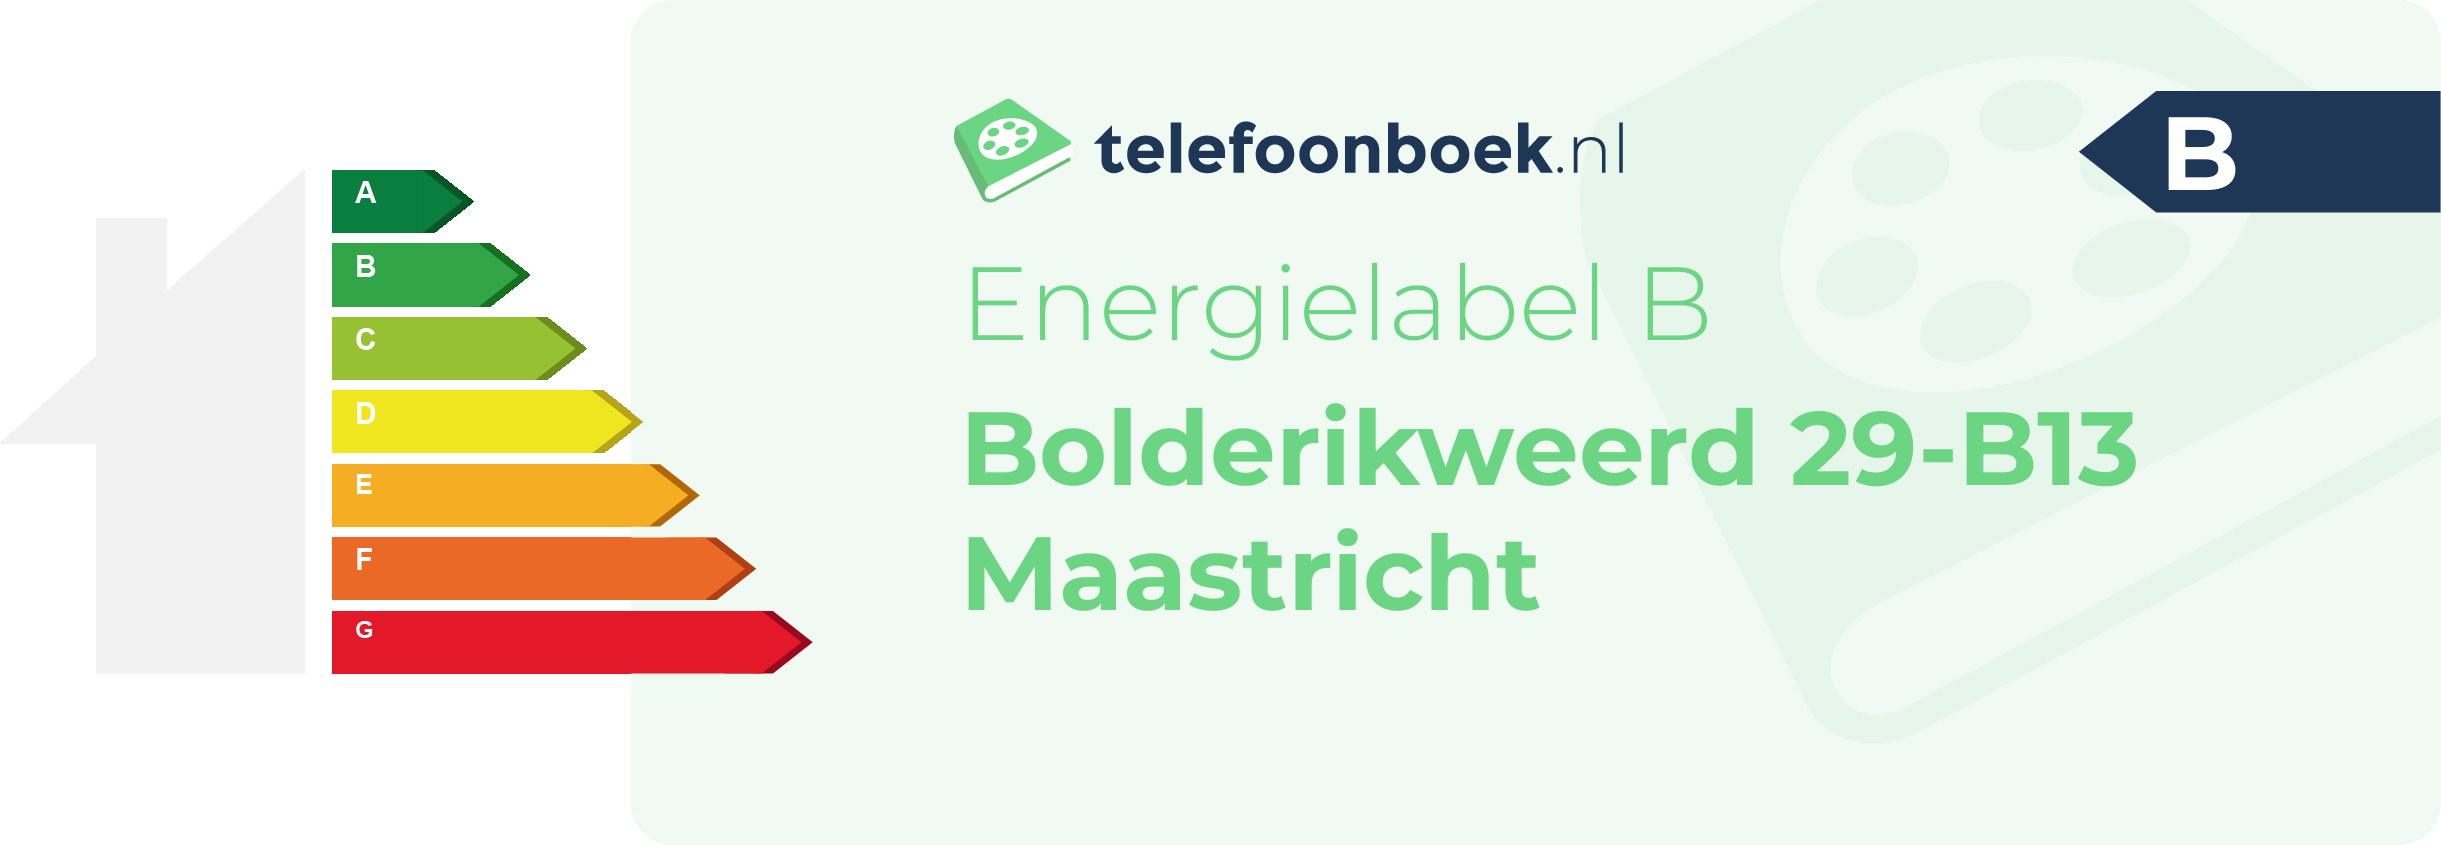 Energielabel Bolderikweerd 29-B13 Maastricht